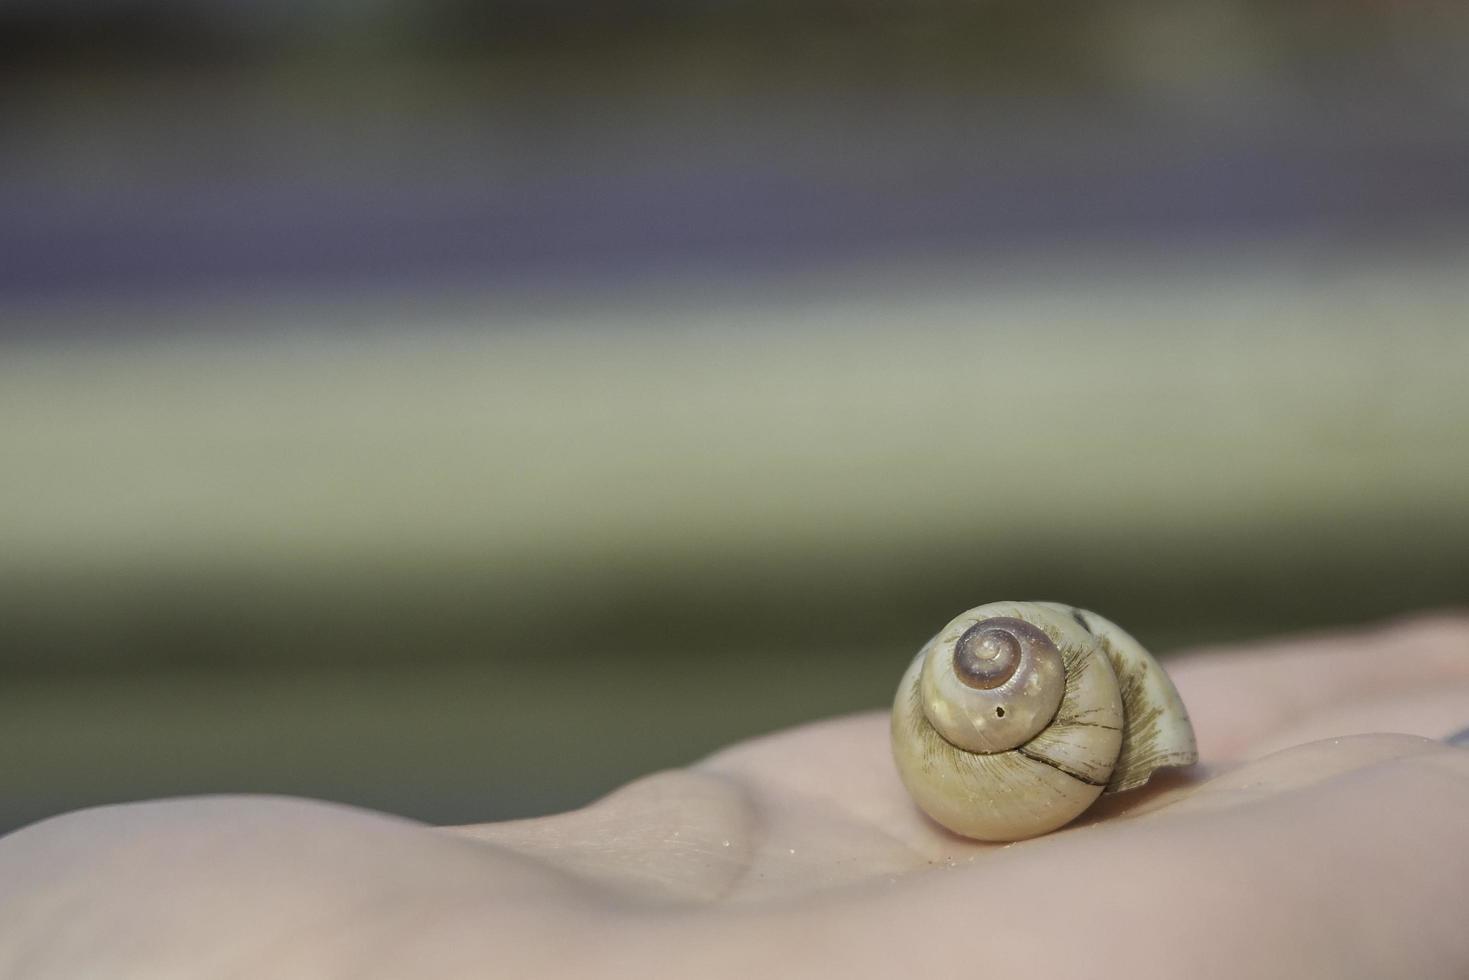 une coquille d'escargot sur une main photo